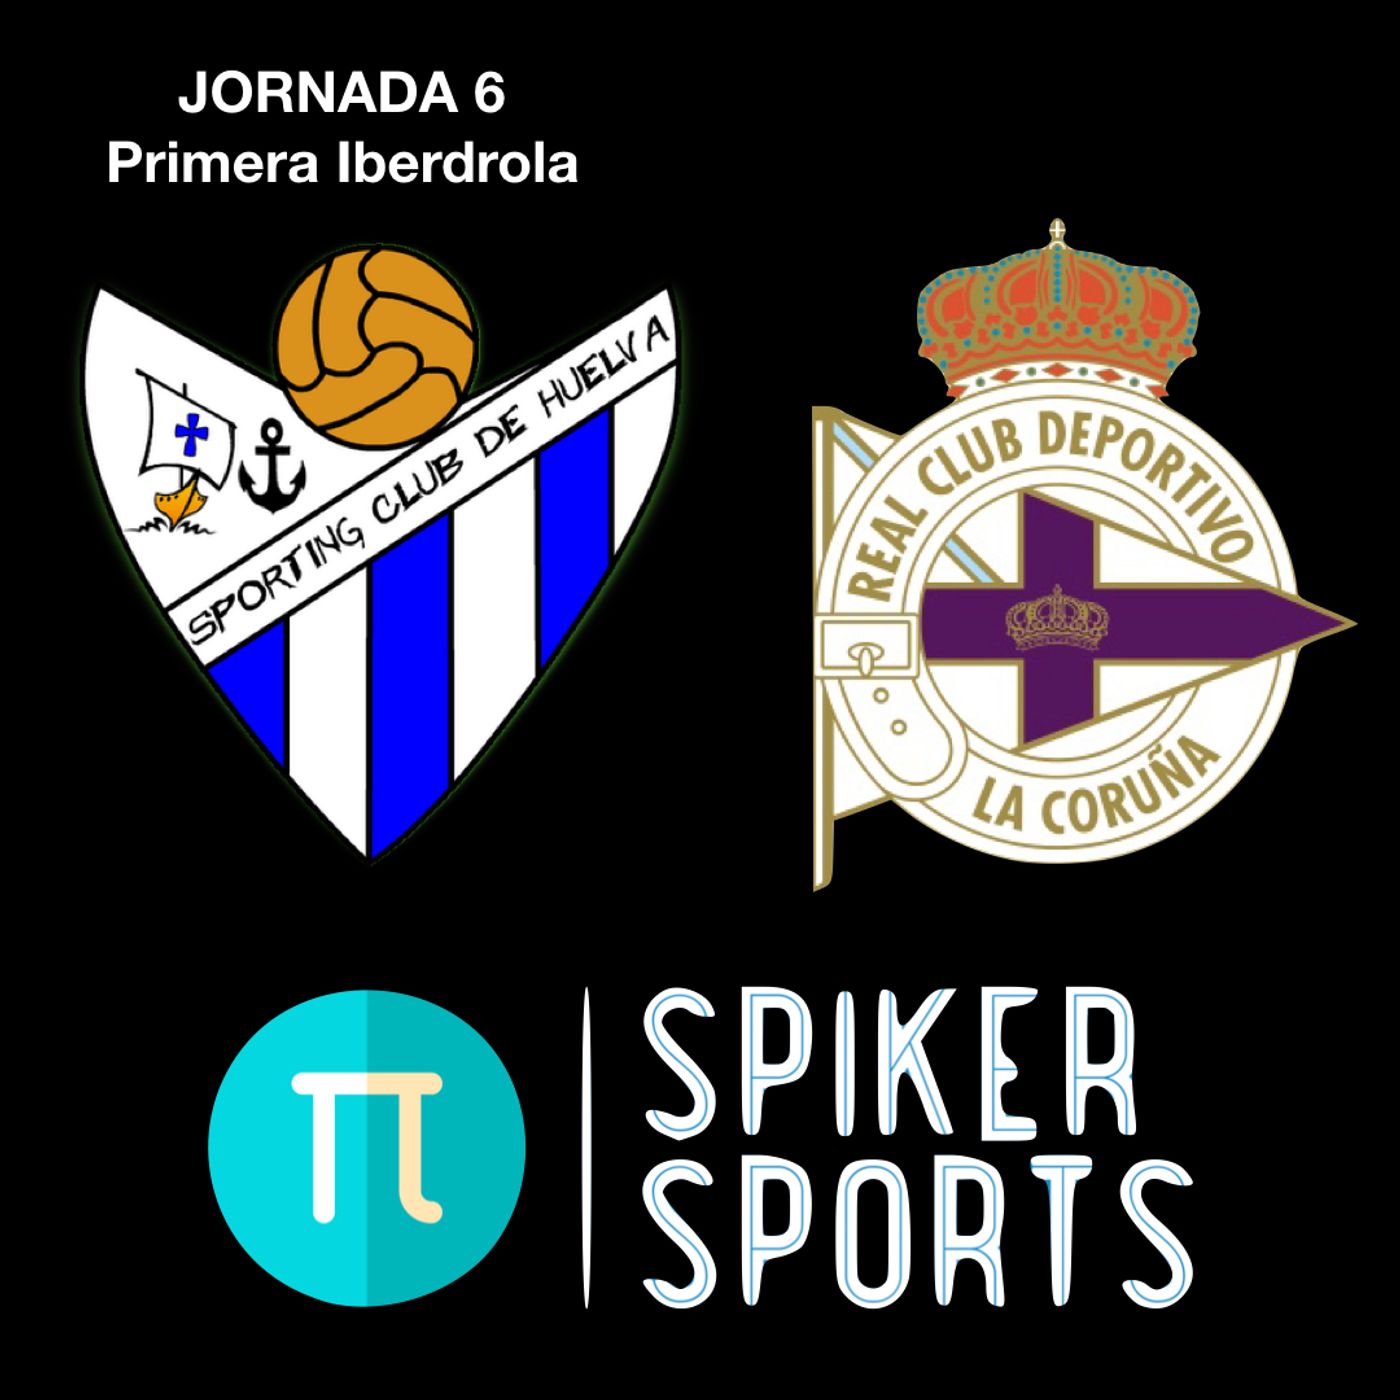 SPORTING || Jornada 6 || Sporting Club de Huelva - Deportivo Abanca